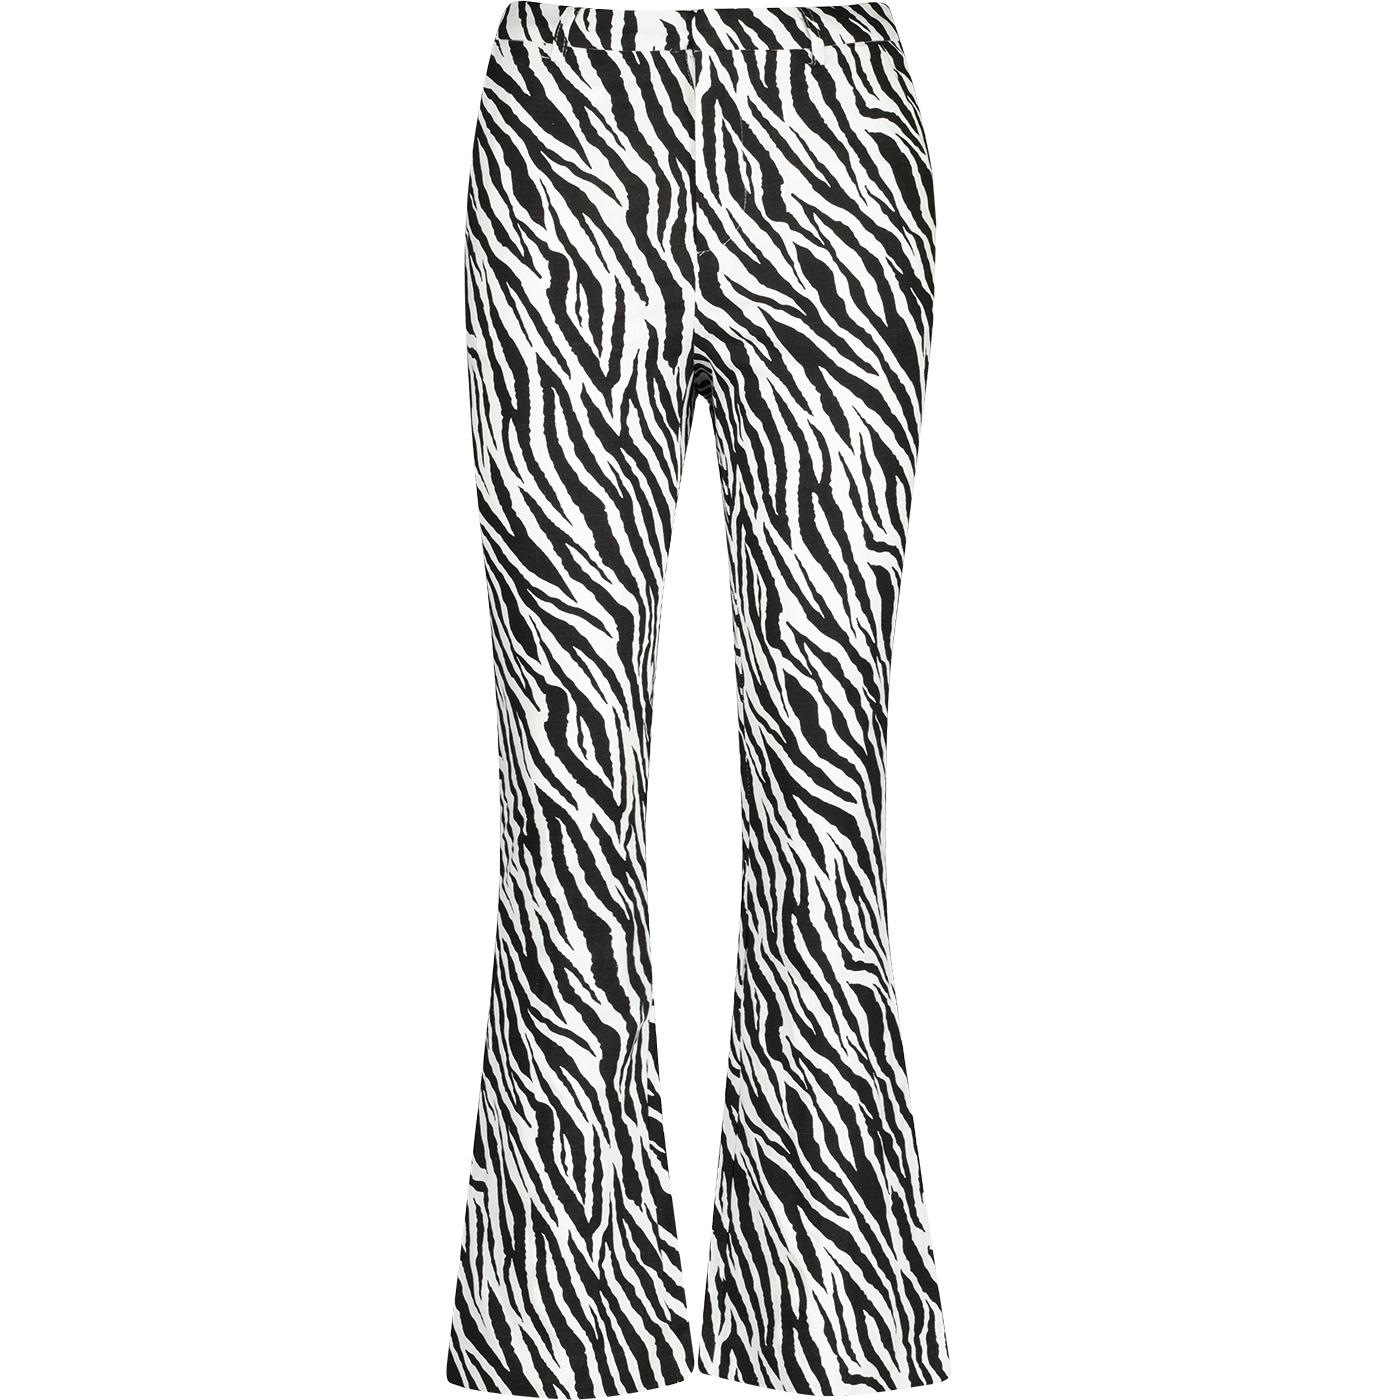 Janelyn Louche Zebra Flared Slim Fit Trouser B/W